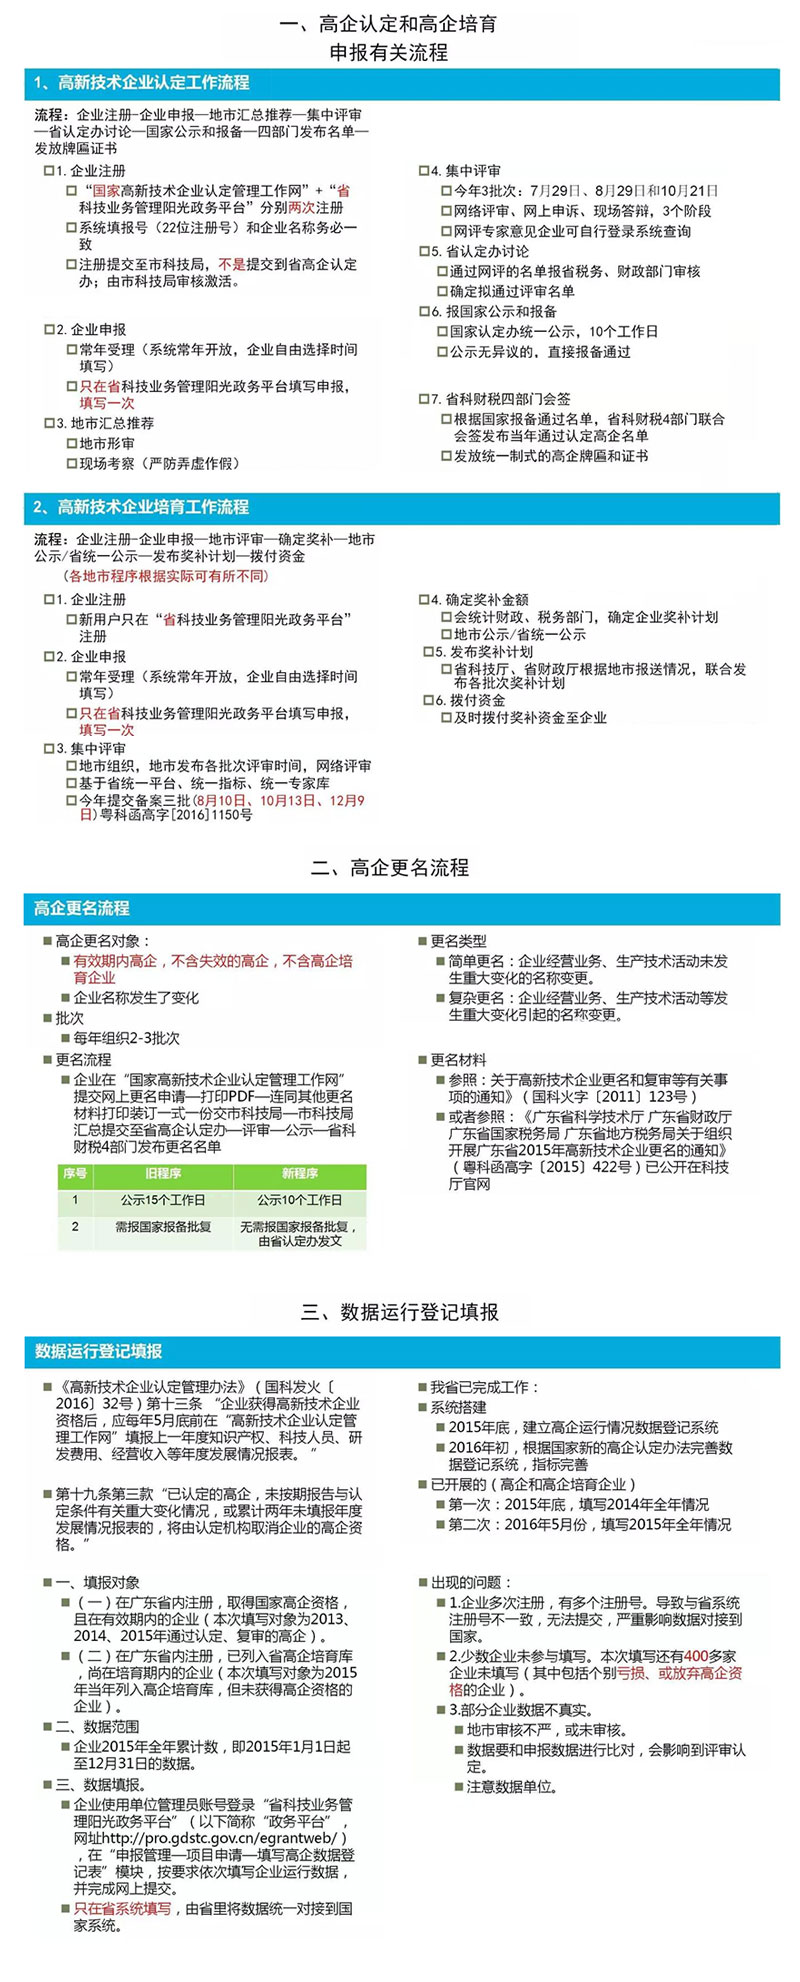 广东省高企工作申评流程及运行数据填报介绍.jpg